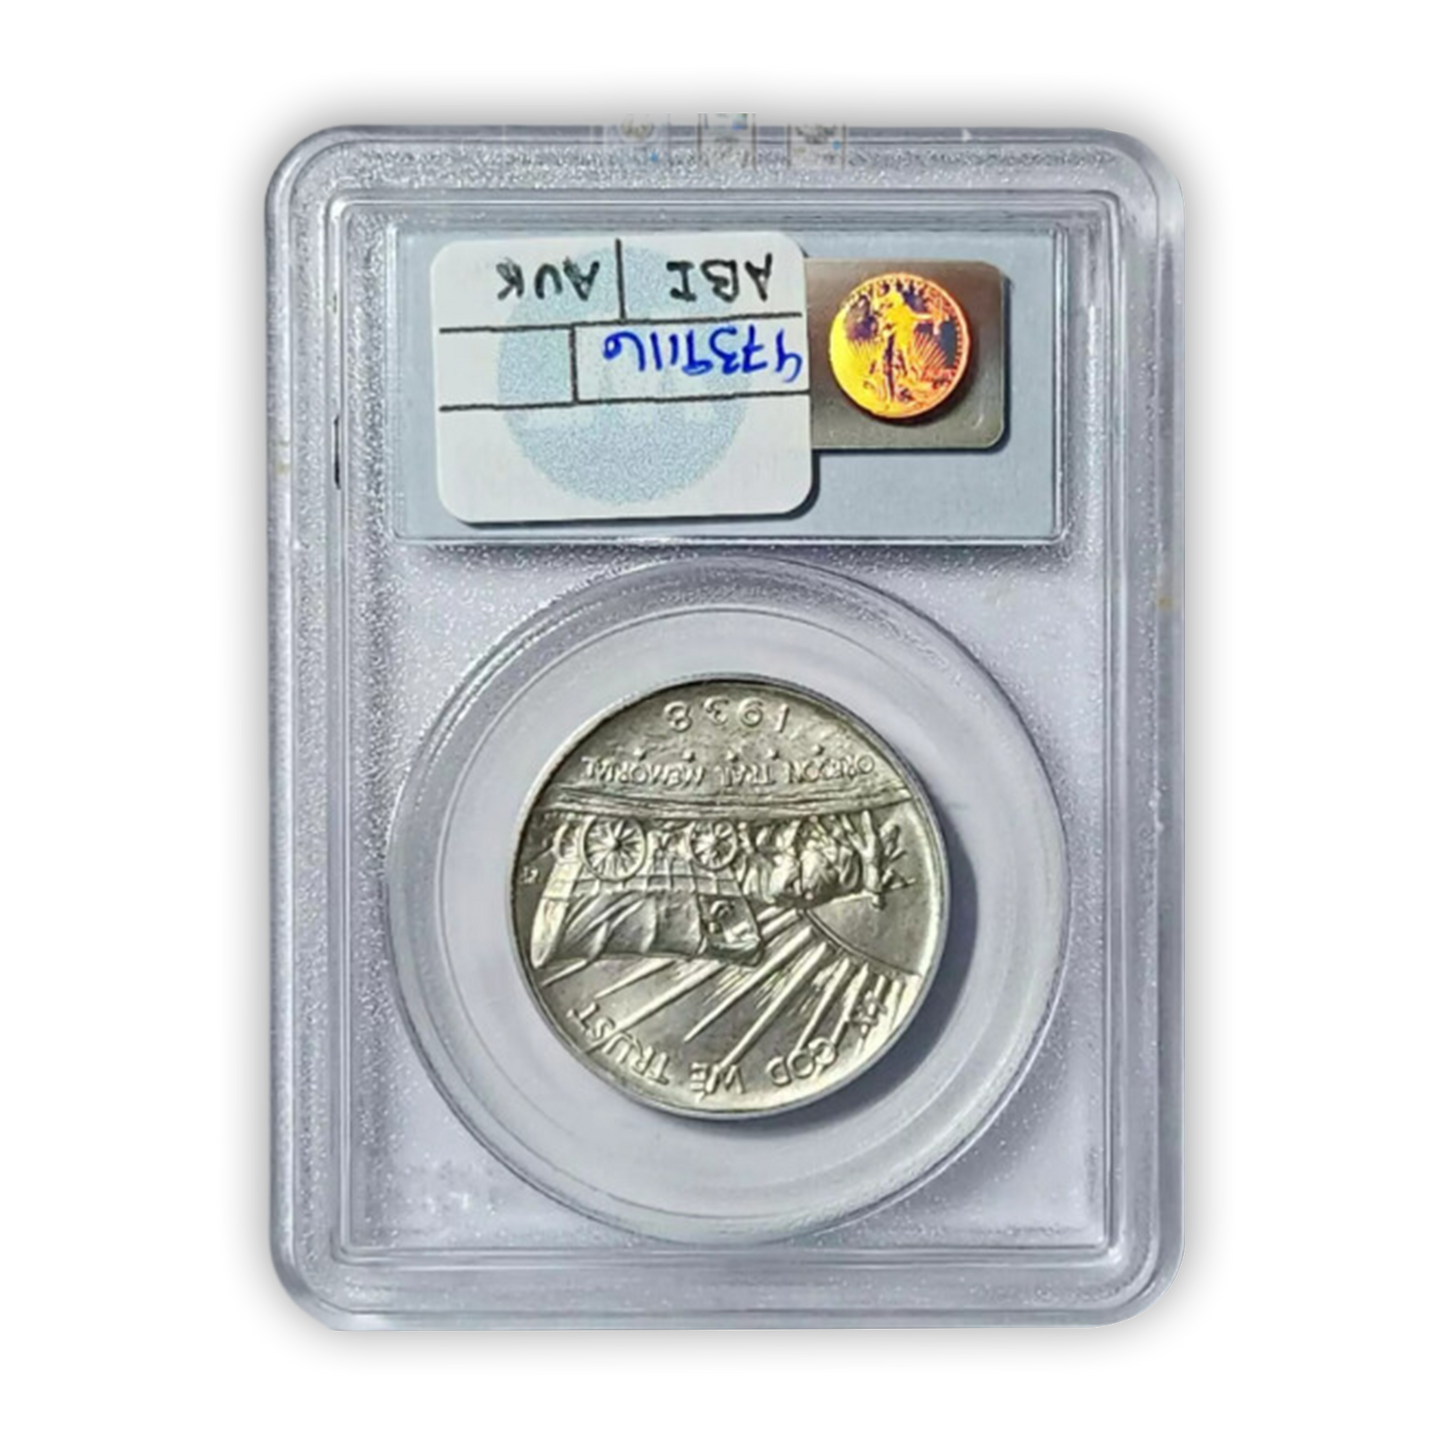 1938-S Oregon Trail Silver Half Dollar Commemorative - PCGS MS65 Sight White